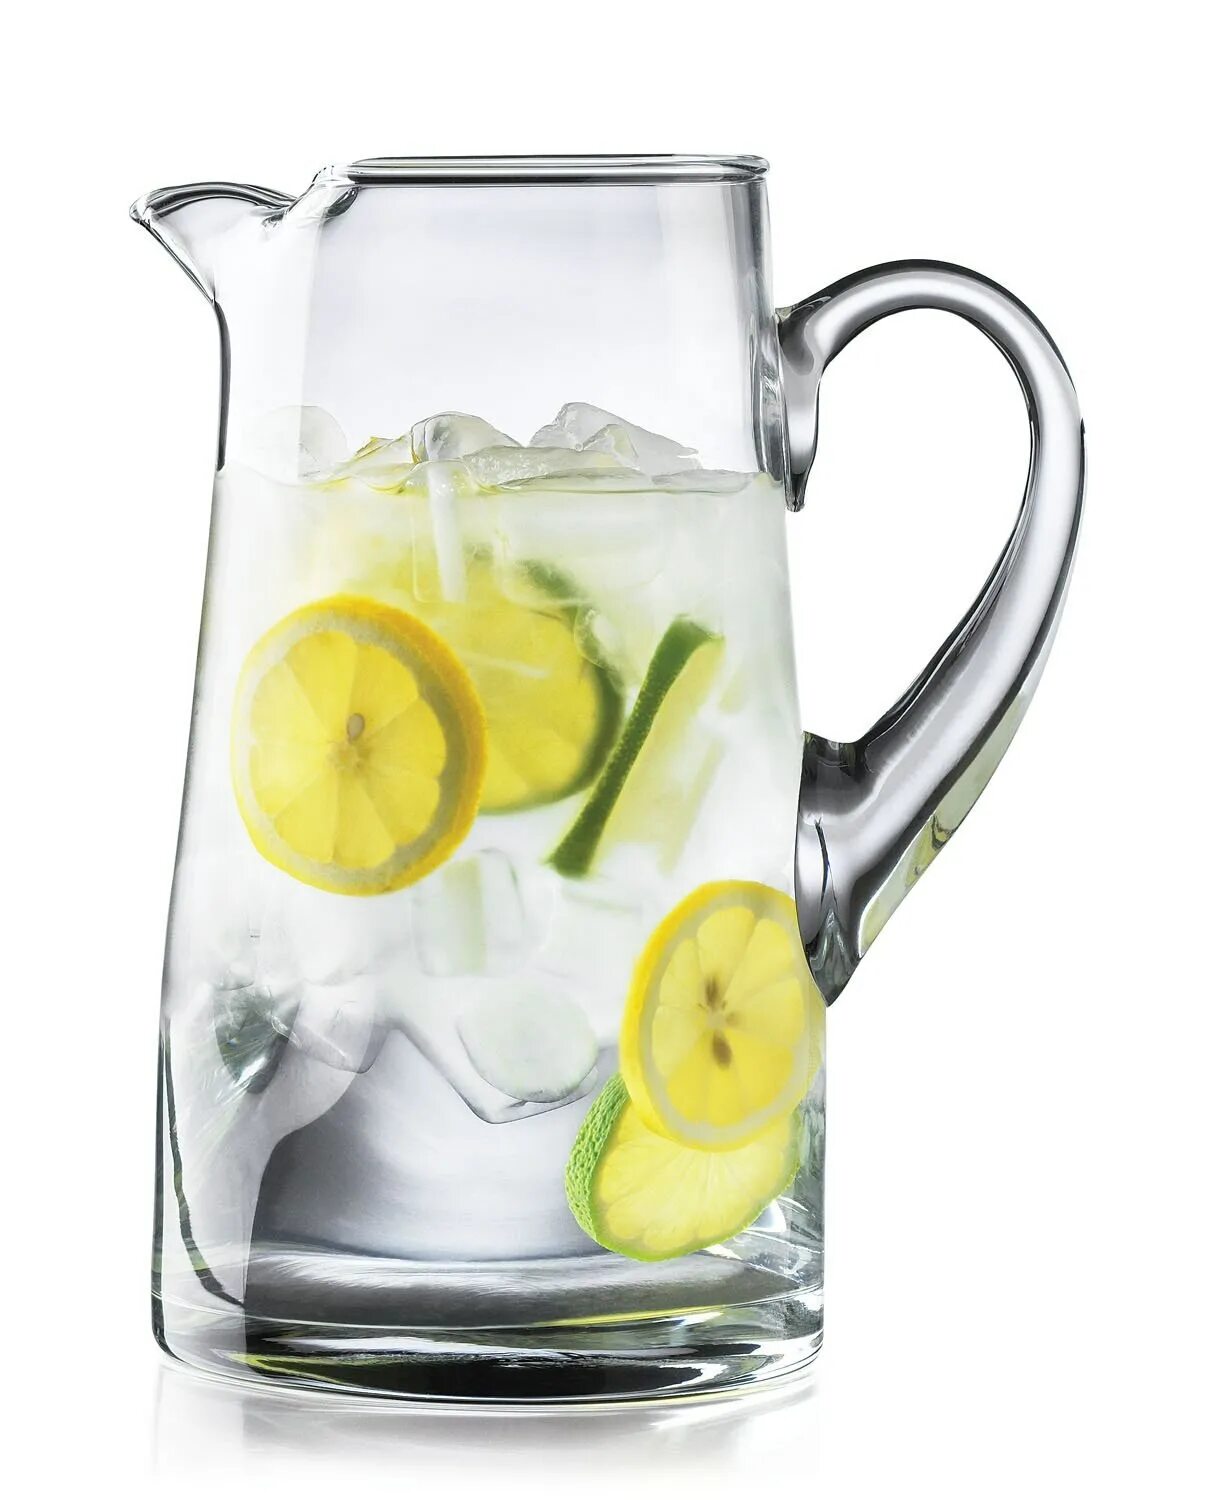 Вода с лимоном в ресторане. Лимонад в кувшине. Лимонад в графине. Графин для лимонада. Вода с лимоном в графине.